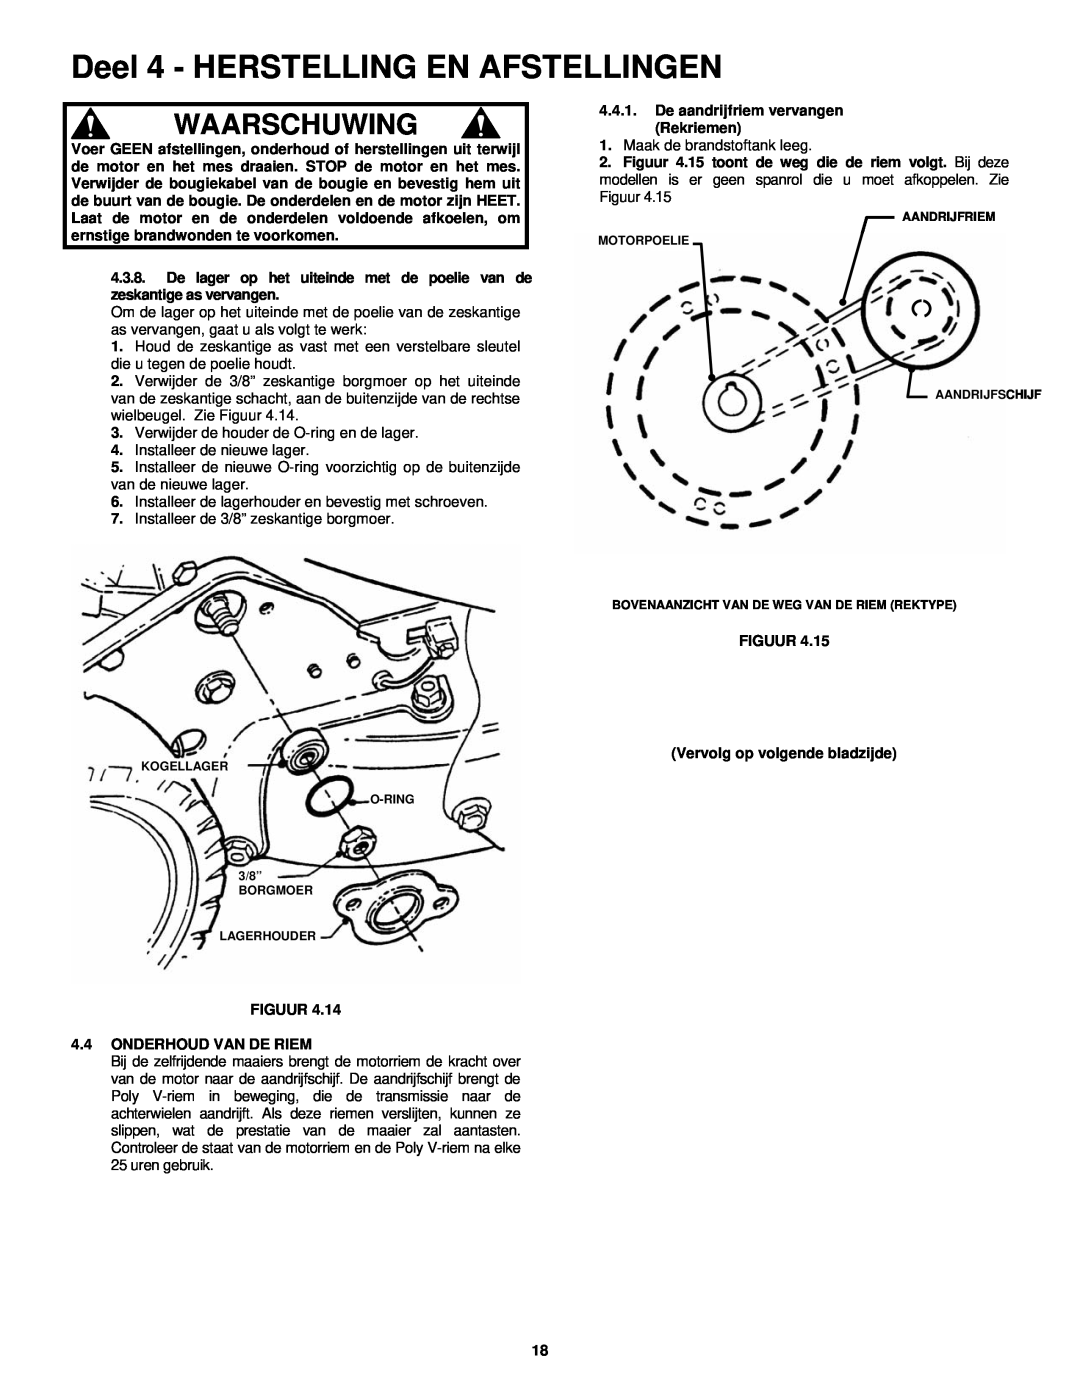 Snapper ERP217019BV manual Deel 4 - HERSTELLING EN AFSTELLINGEN, Waarschuwing, Verwijder de houder de O-ring en de lager 